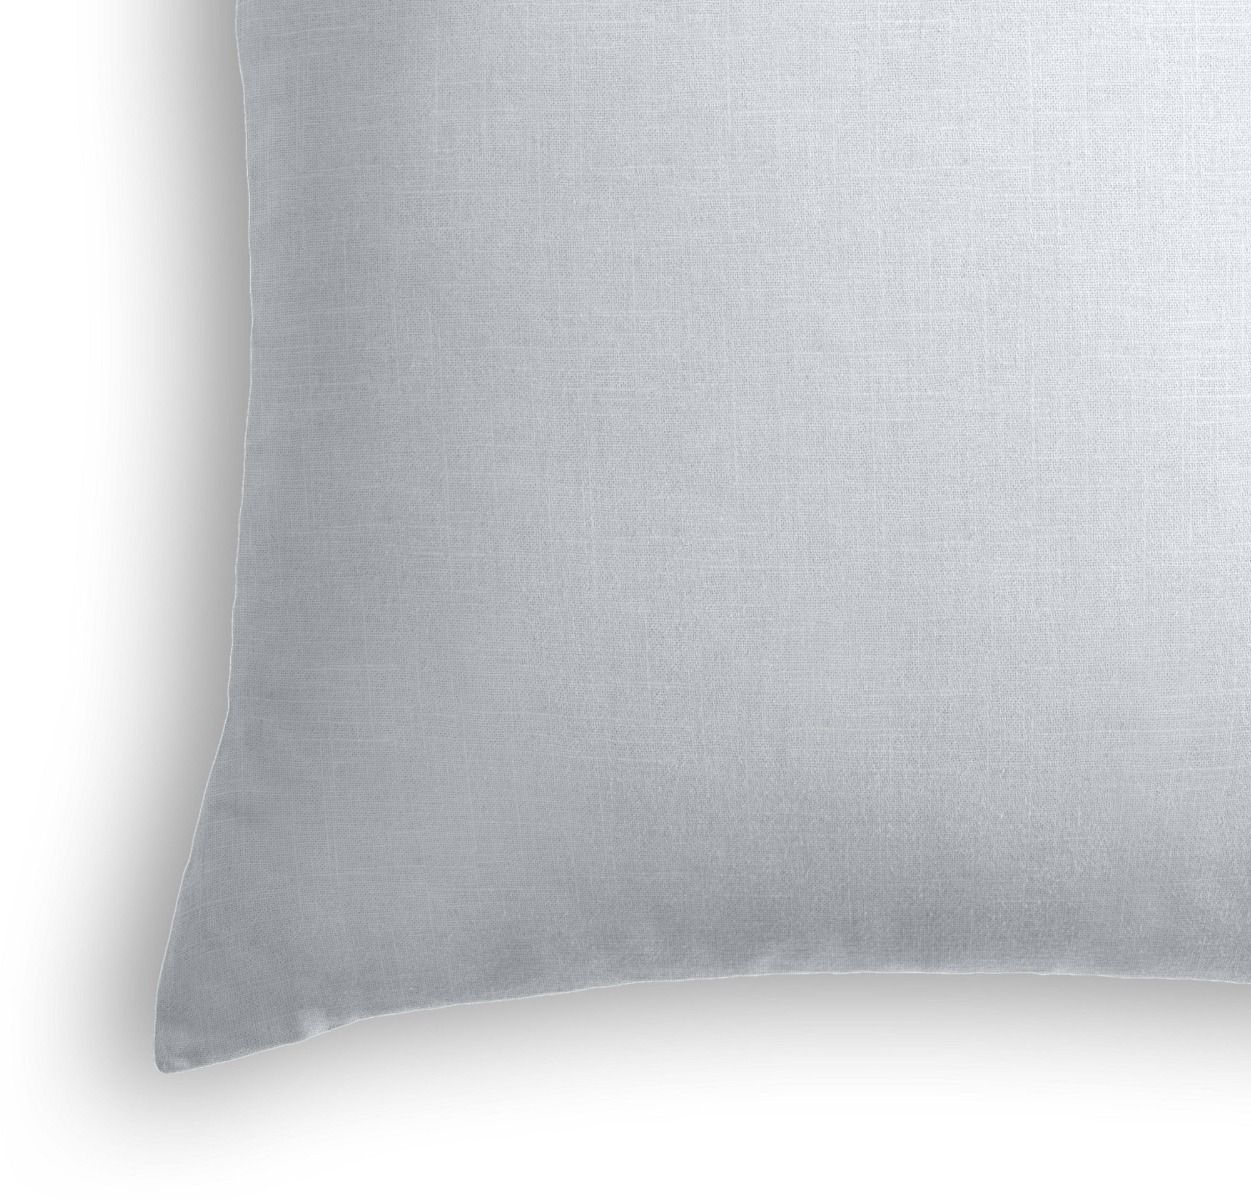 Classic Linen Pillow, Pale Blue, 20" x 20" - Image 1